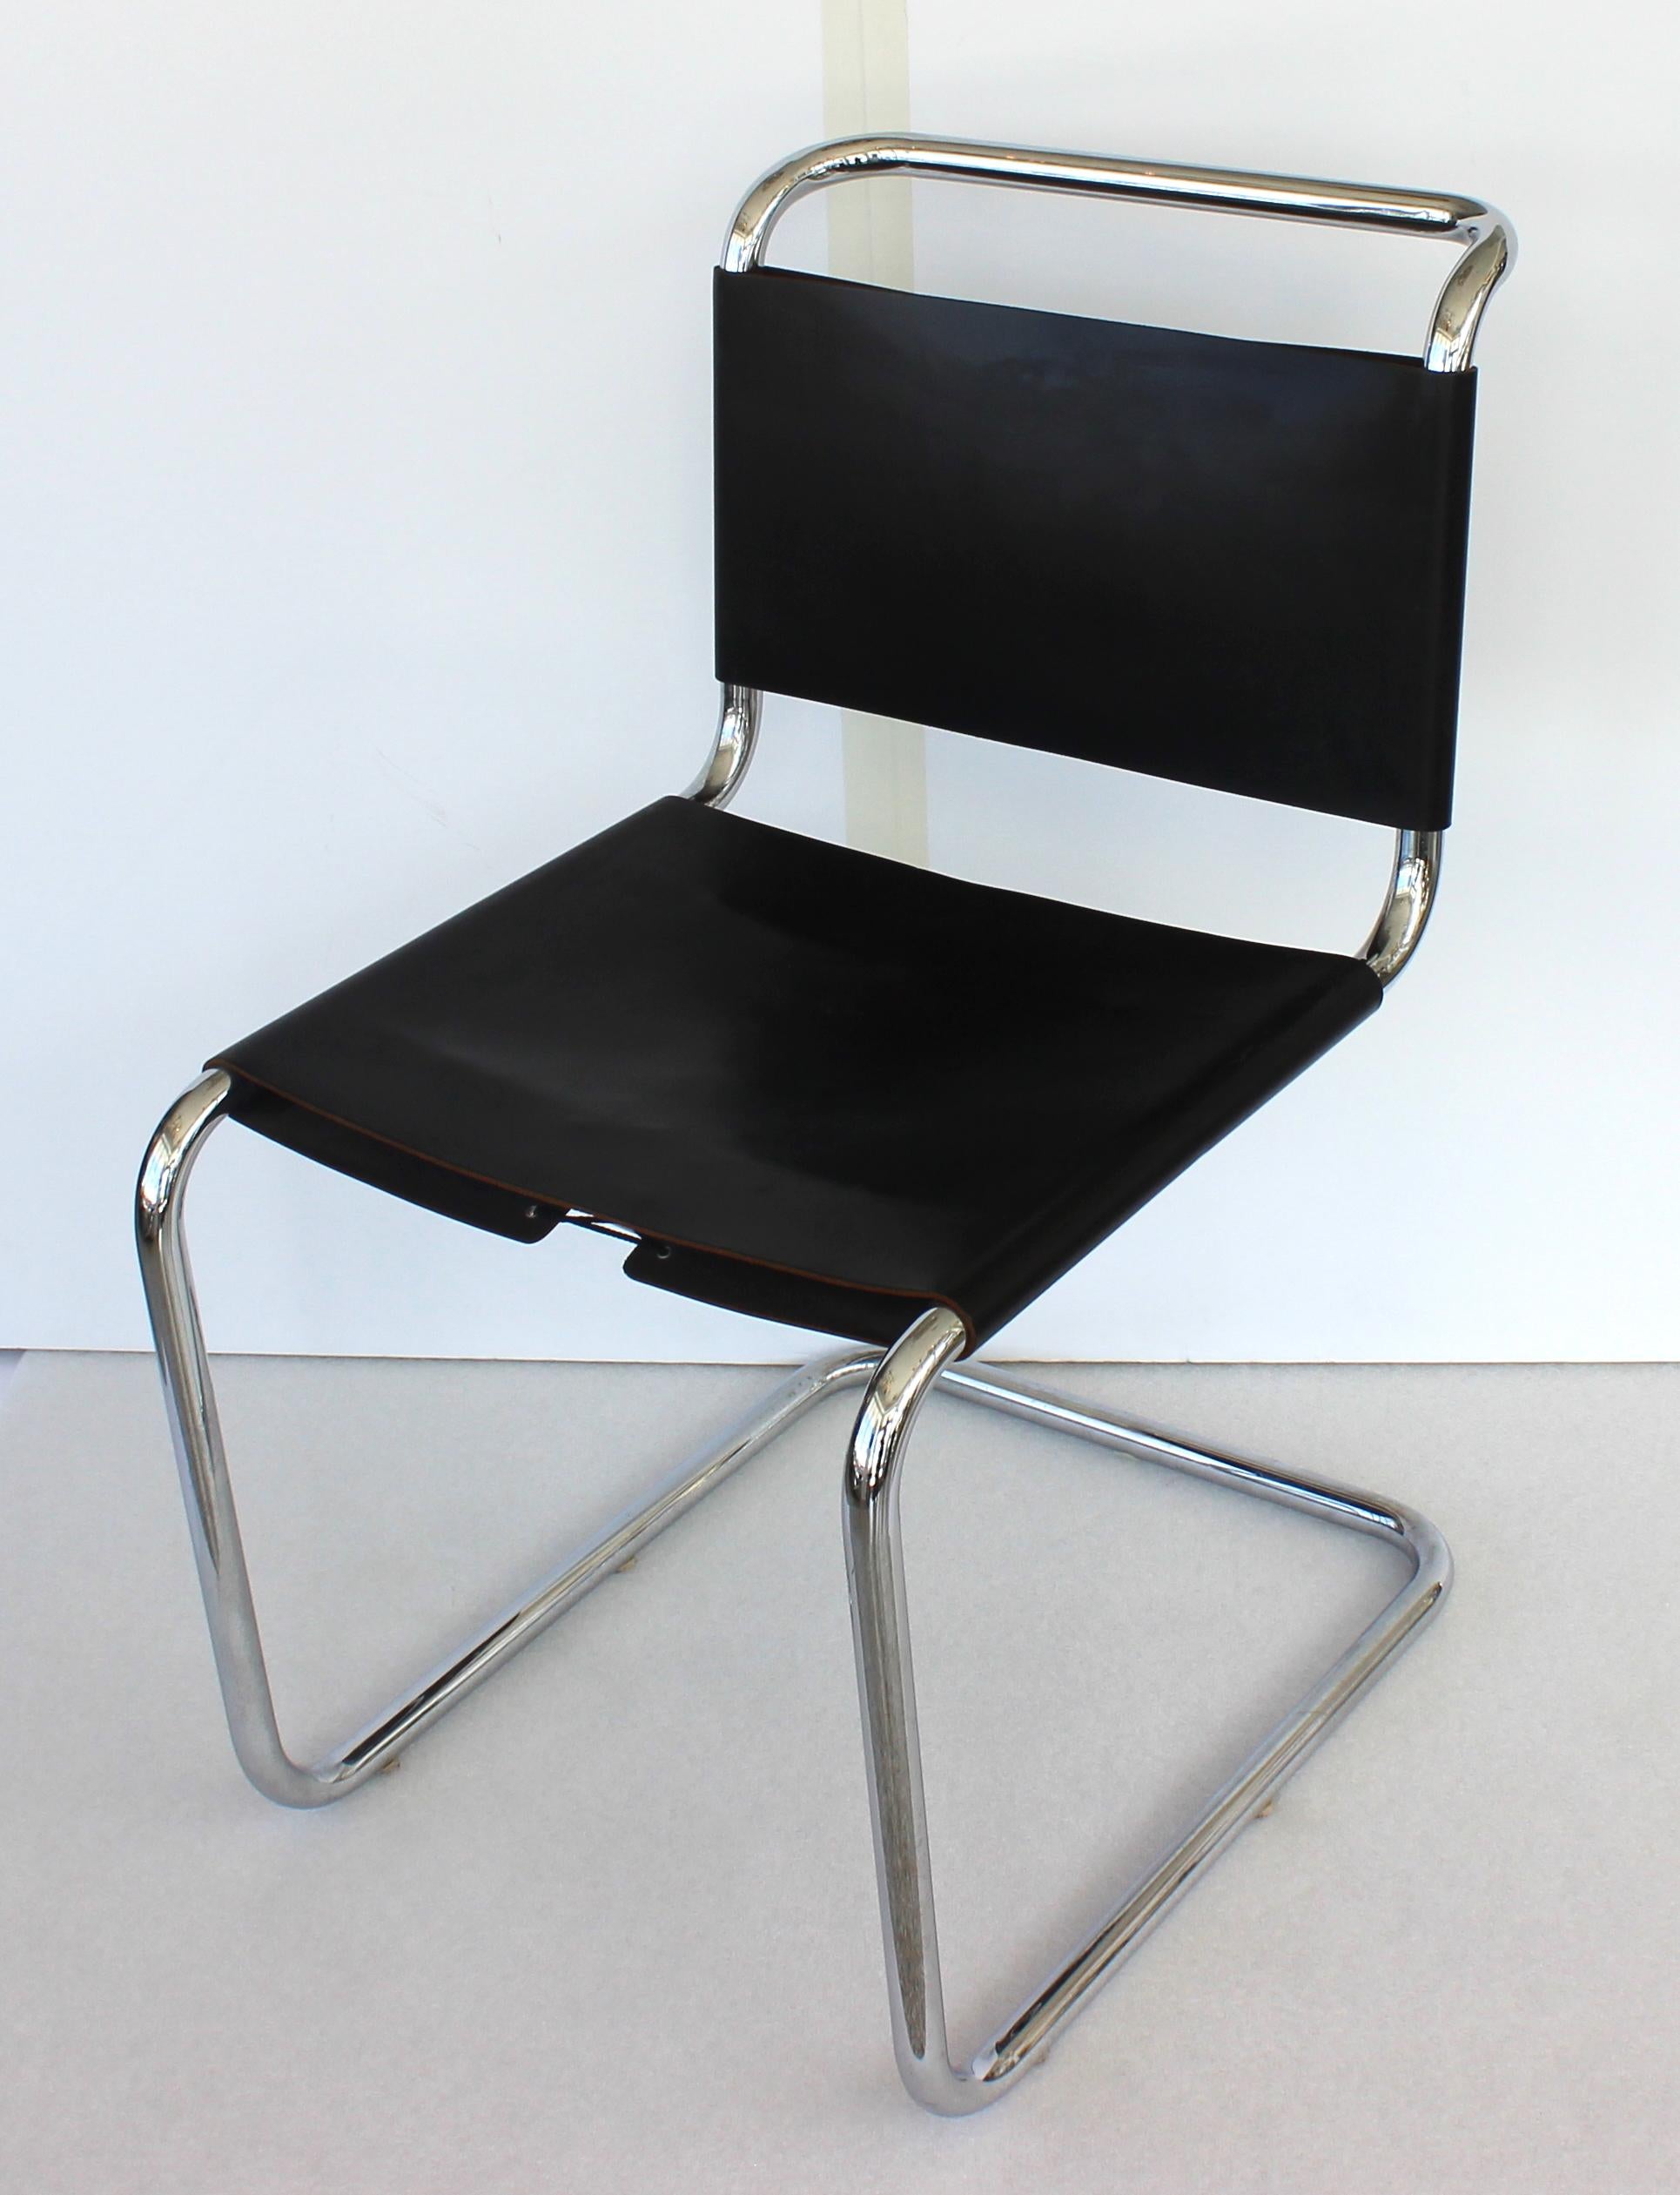 Dieses Stück ist im Stil des  Mies van der Rohe MR10 Stuhl, der aus den 1970er Jahren stammt. 

Hinweis: Das Stück ist aus poliertem Chrom gefertigt und hat eine Sitzfläche und Rückenlehne aus schwarzem Leder.